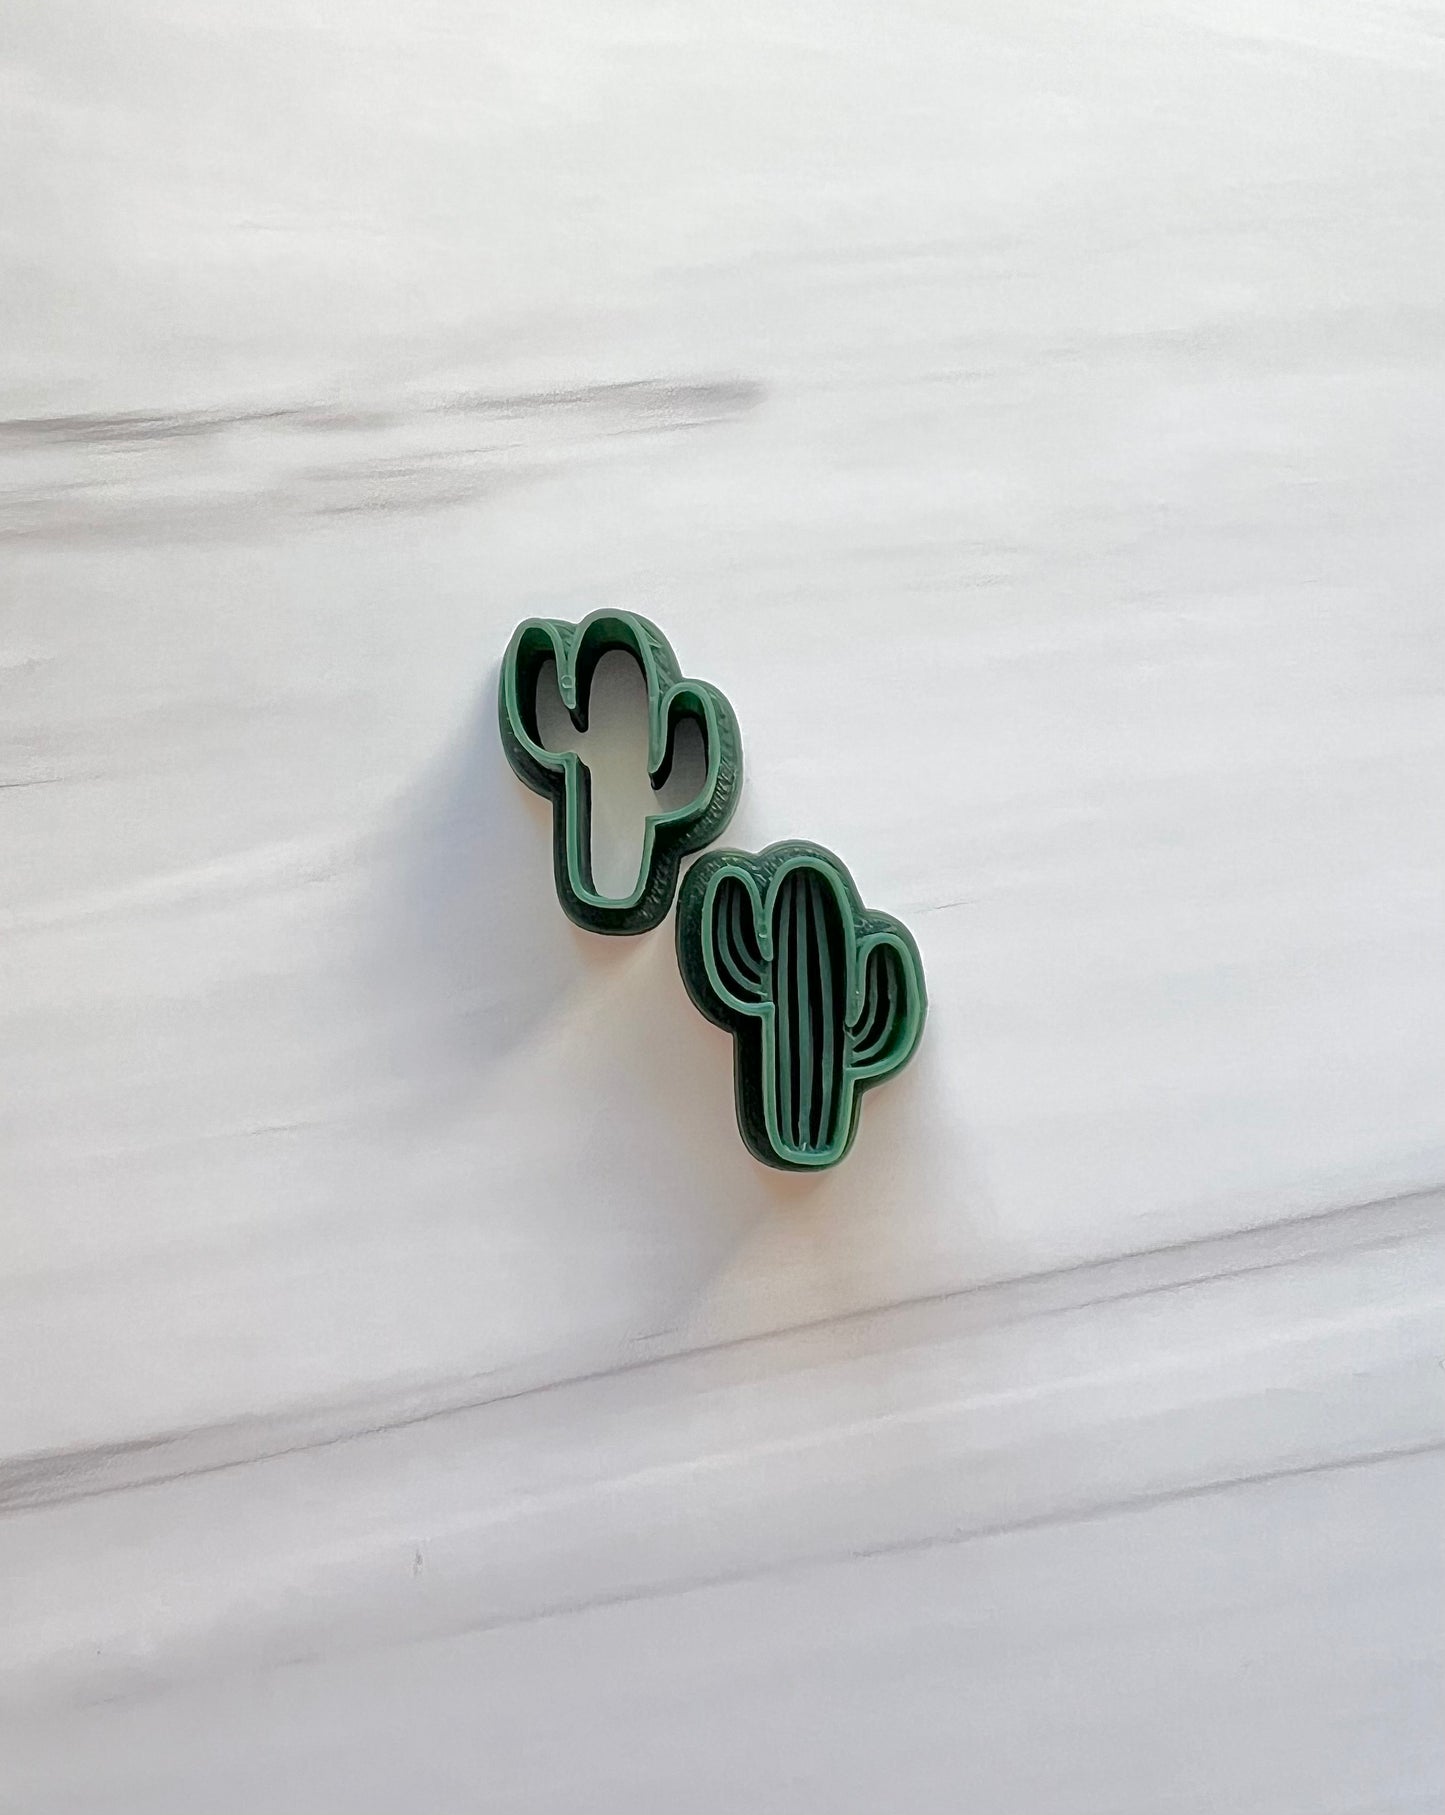 Cactus Set